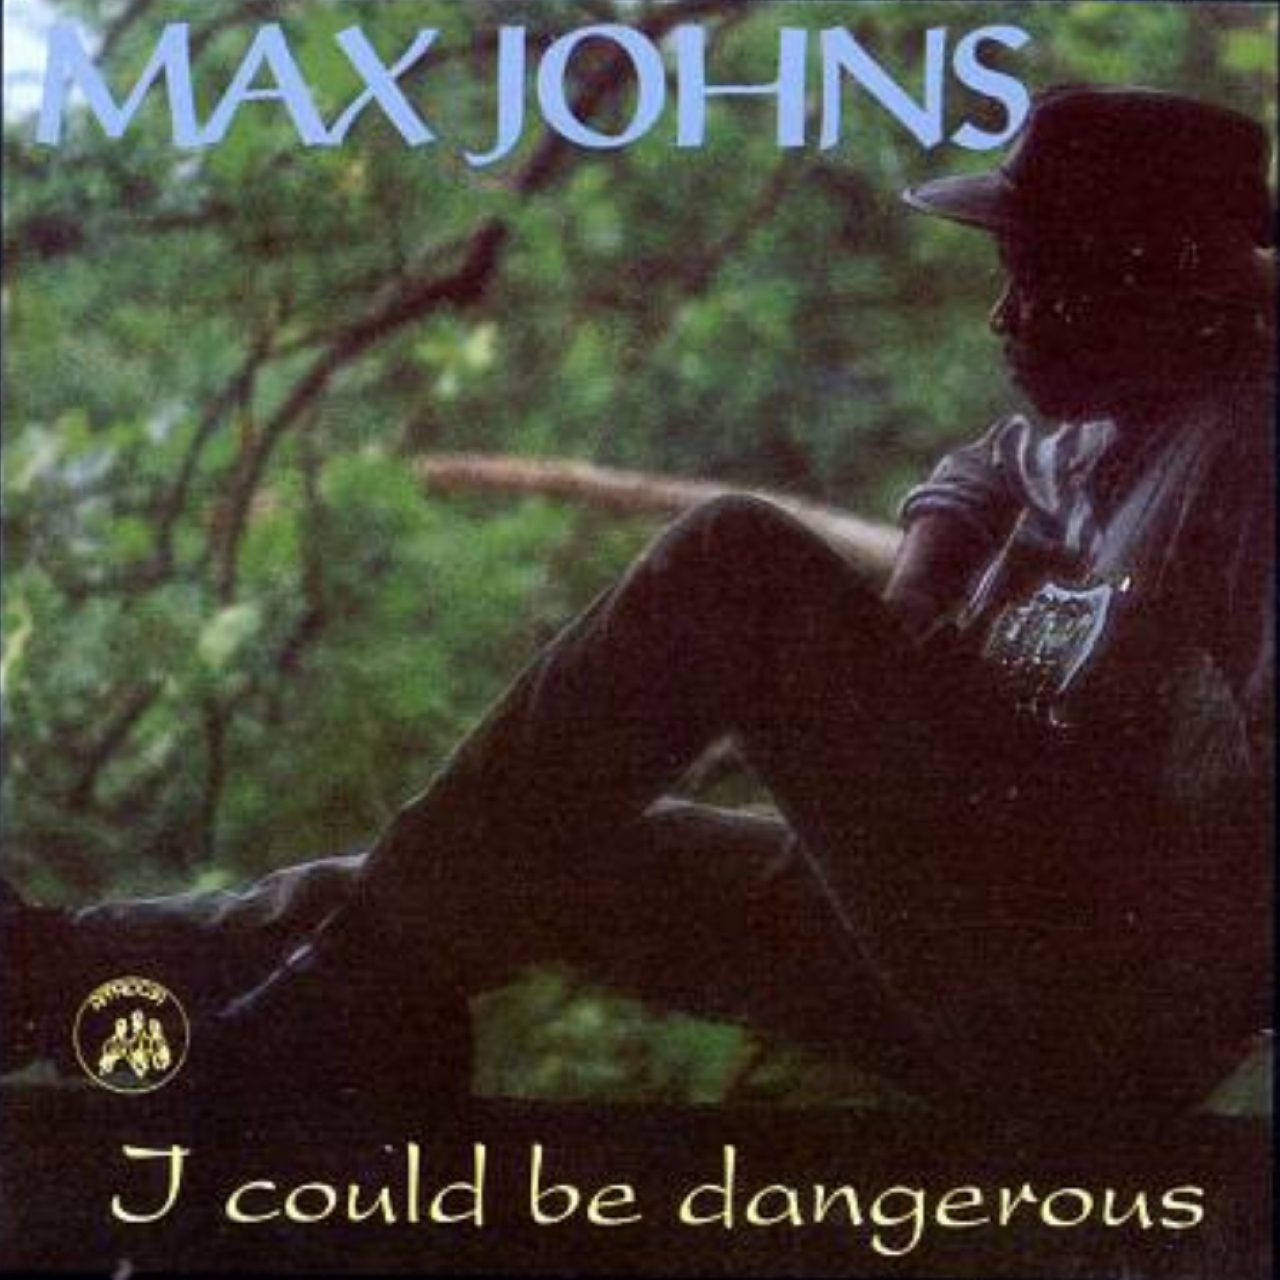 Max Johns